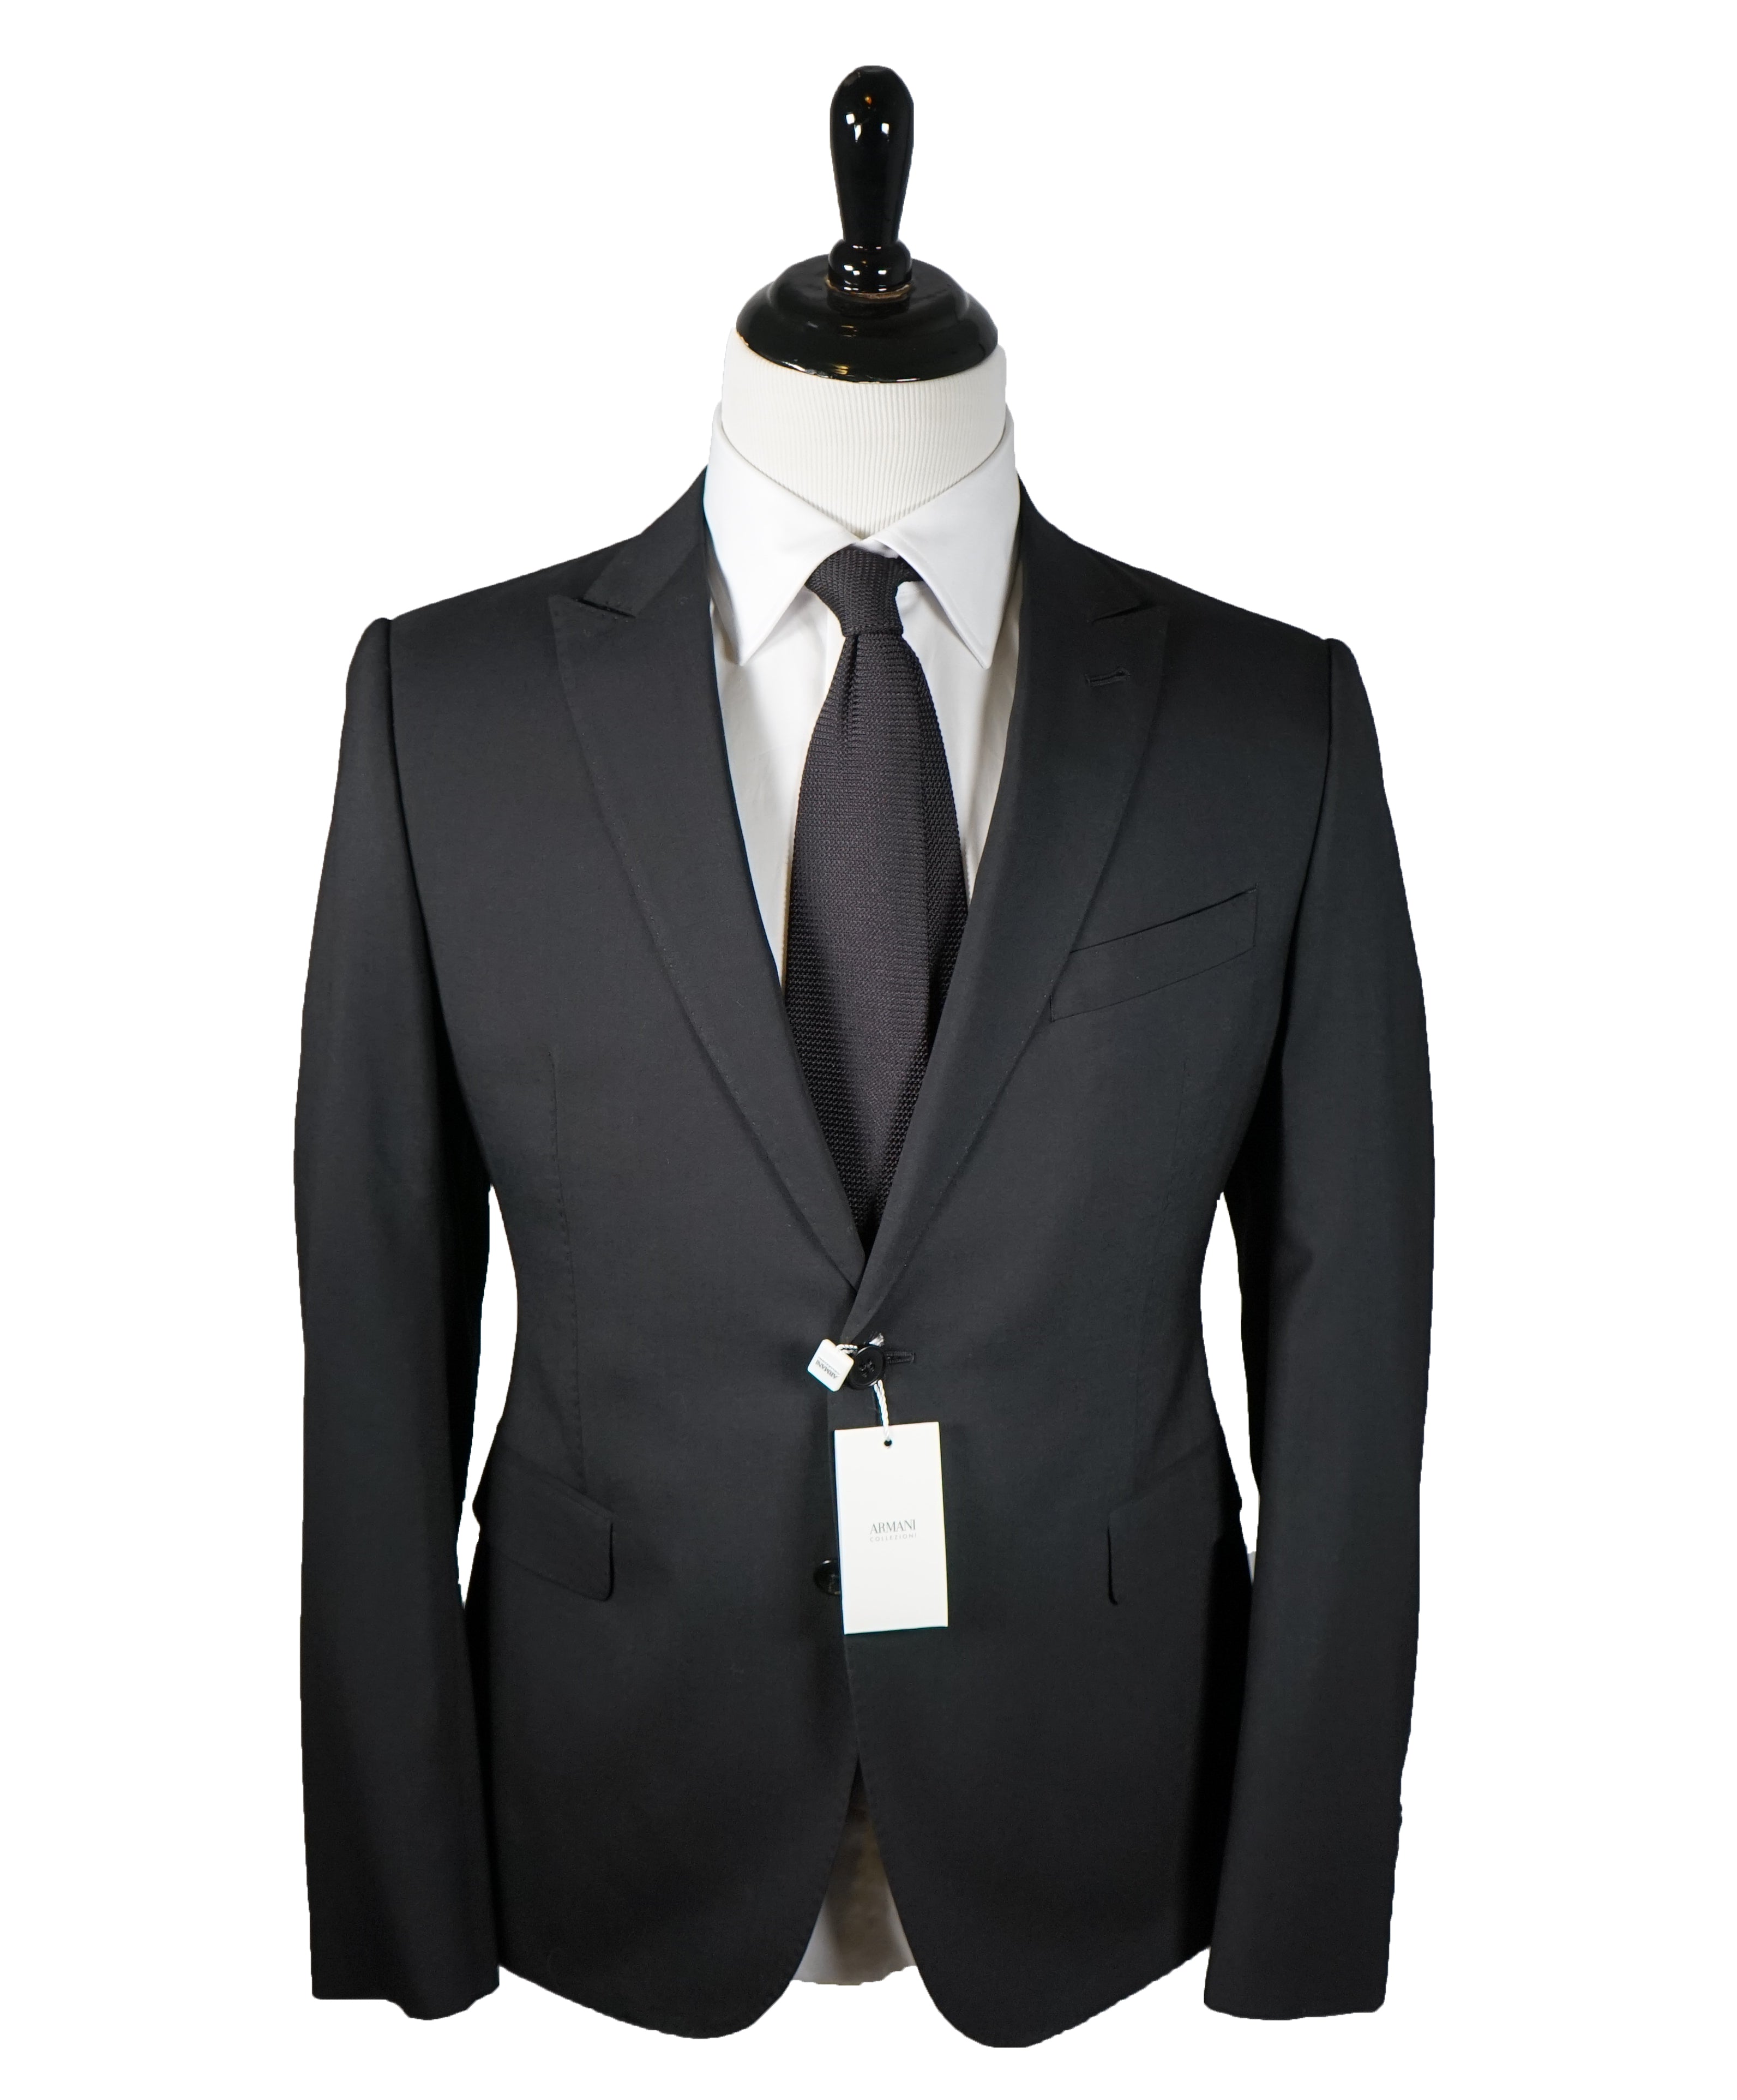 Armani Collezioni M Line Slim Drop 8 Black Peak Lapel Suit 42r Luxe Hanger